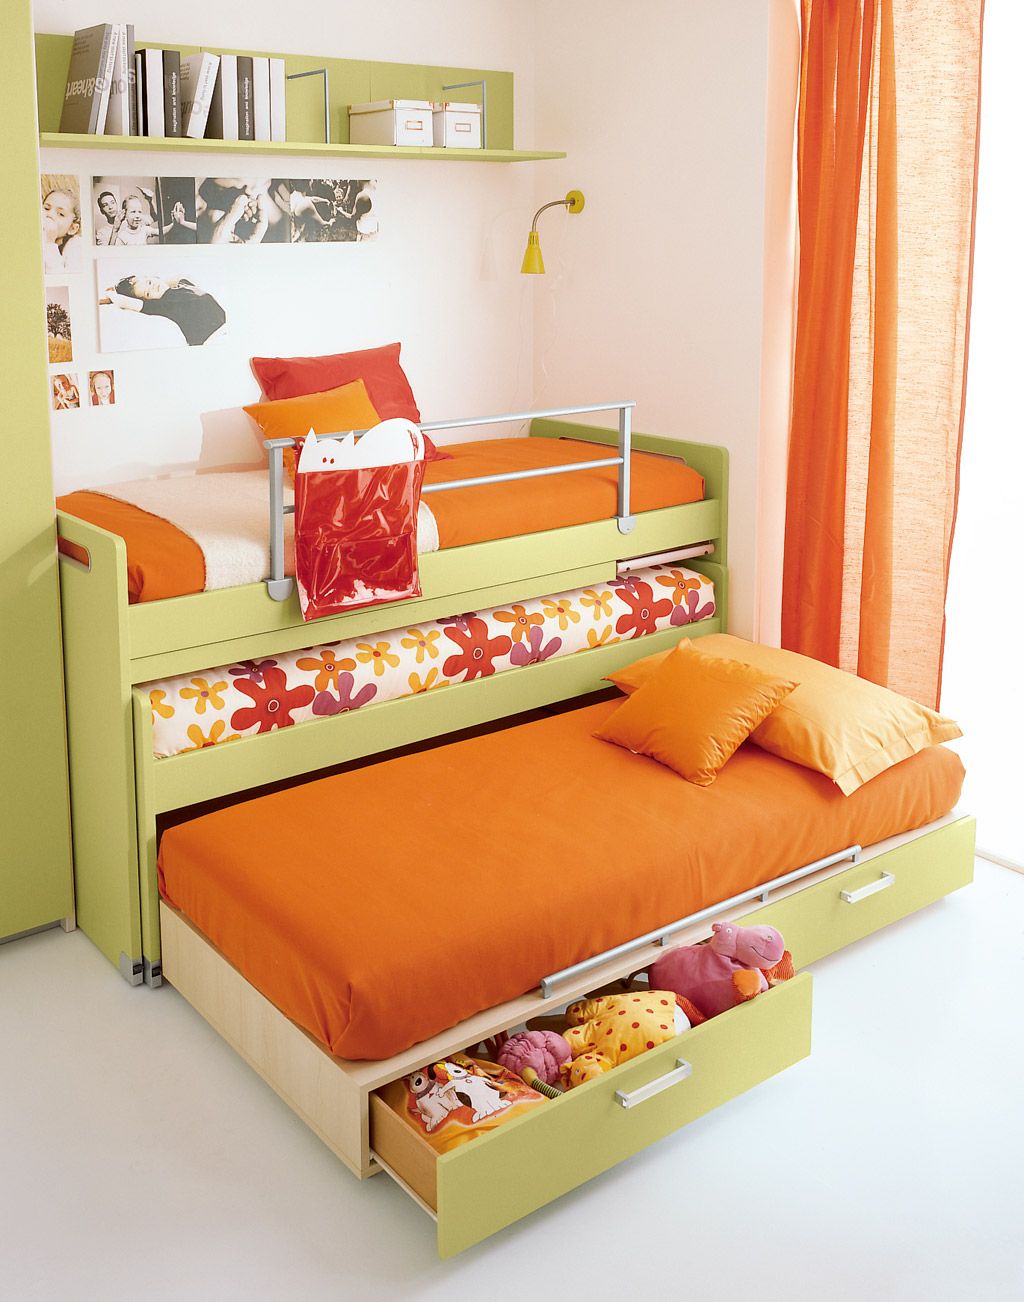 Кровать с двумя выдвижными спальными местами и шухлядами для игрушек